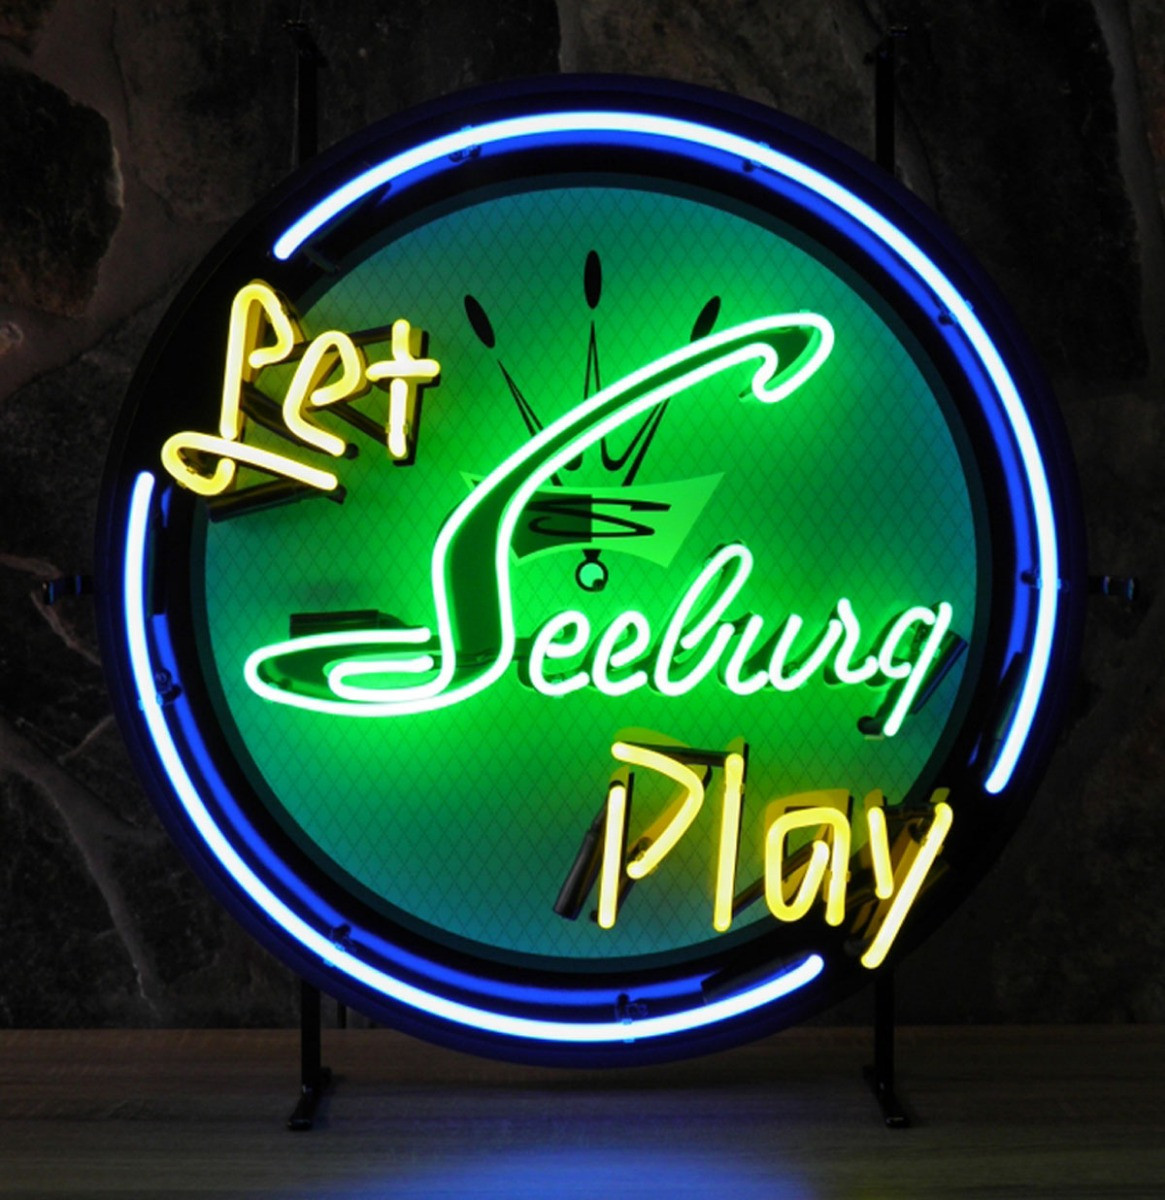 Let Seeburg Play Neon Verlichting 60 x 60 cm